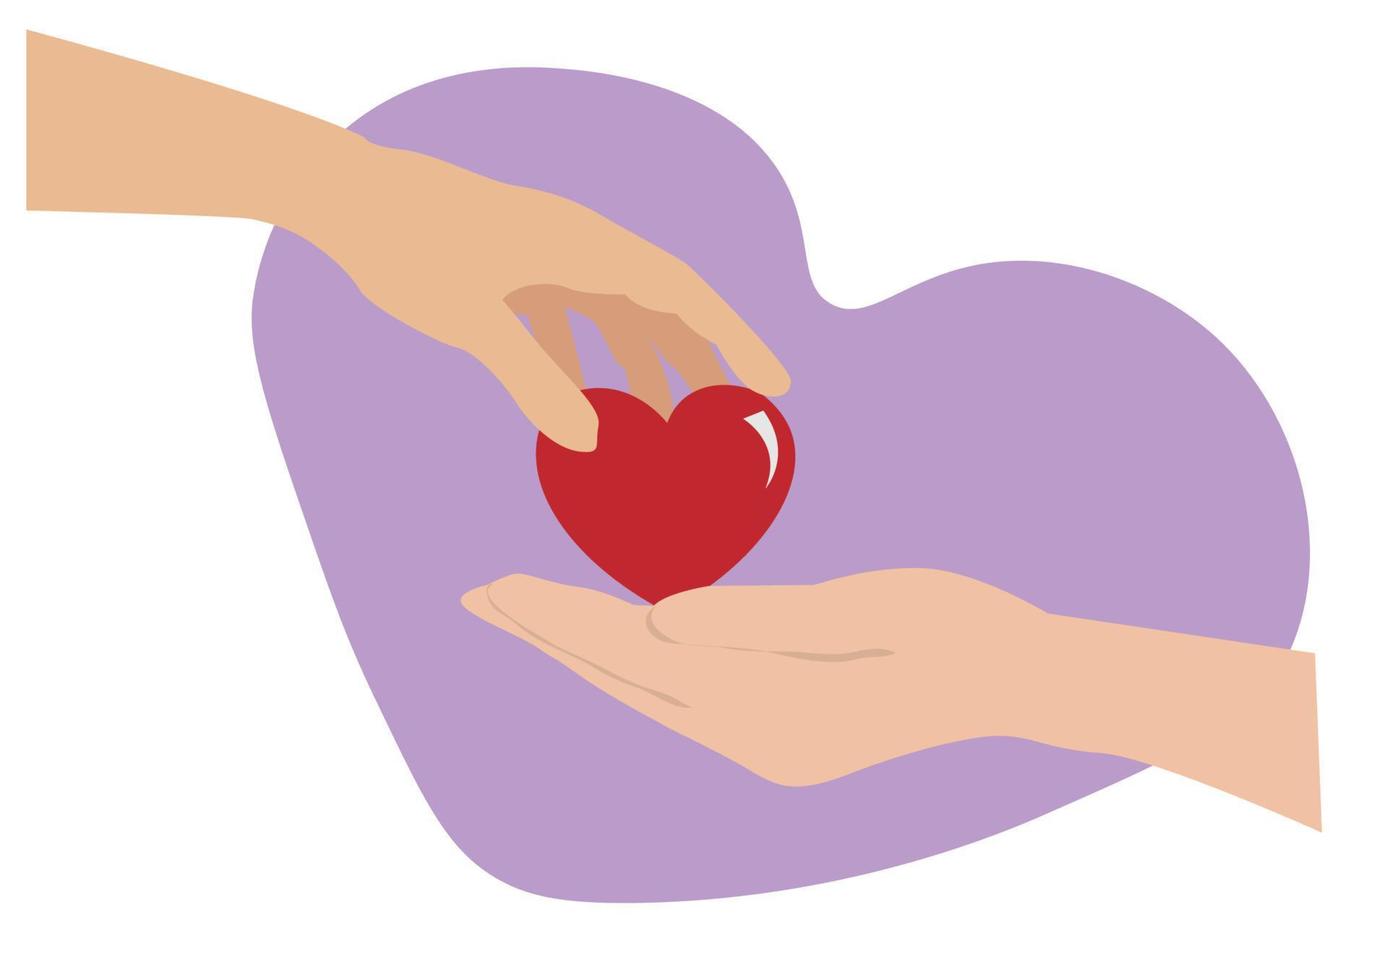 begreppet kärlek, oro, delning, donation av mänsklig typ genom att ge hjärtan till varandra. platt tecknad illustration. vektor